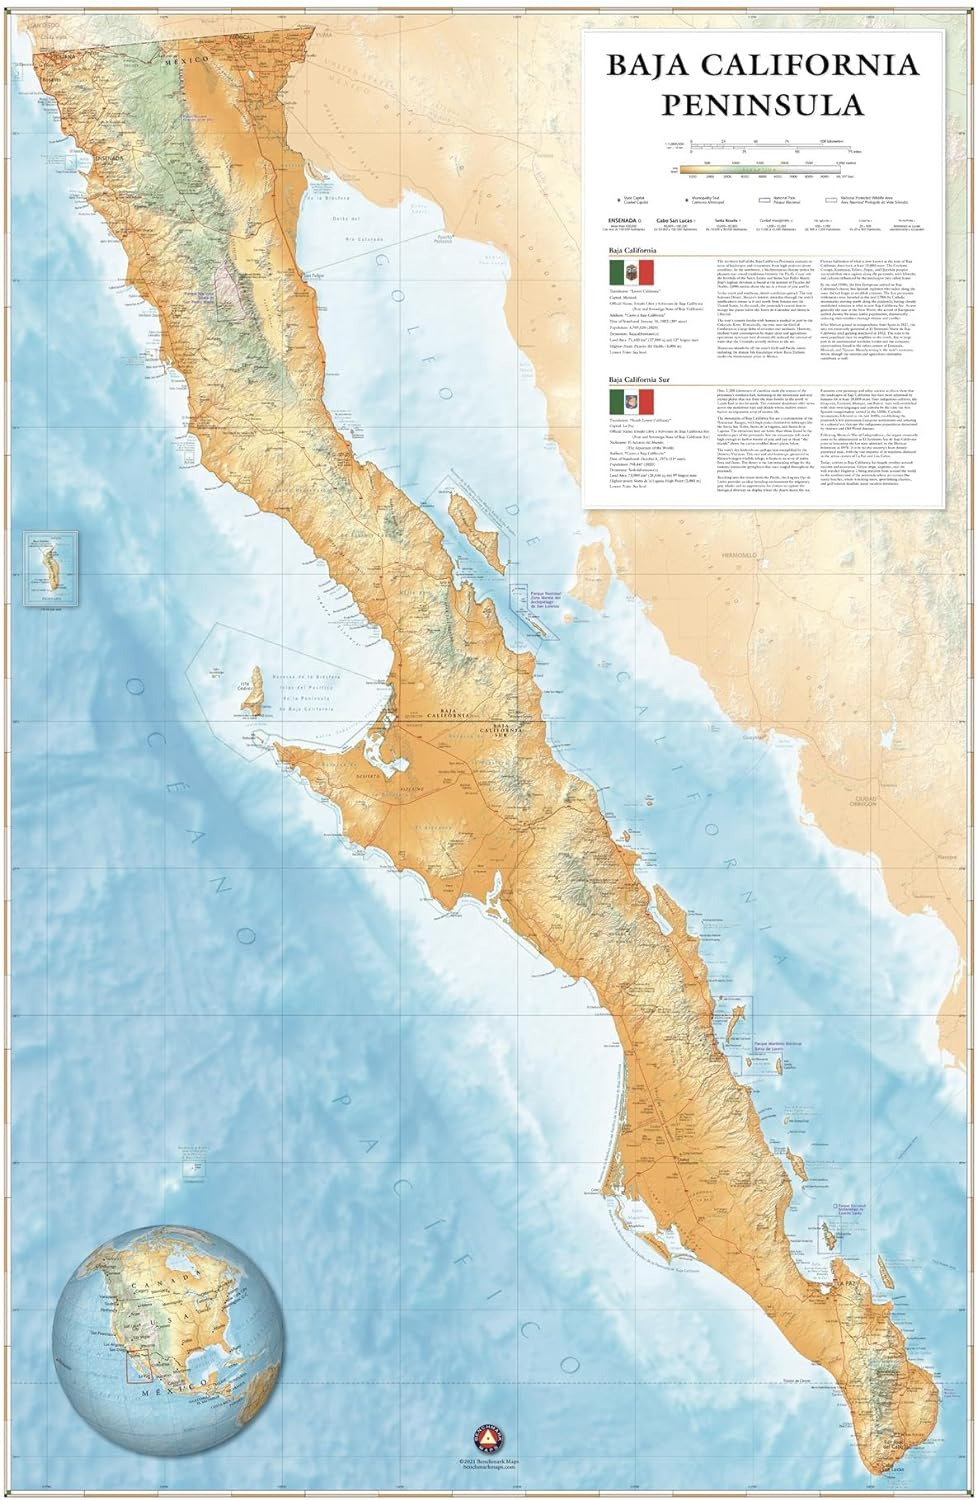 Baja California Peninsula Wall Map - 25 X 39 Inches